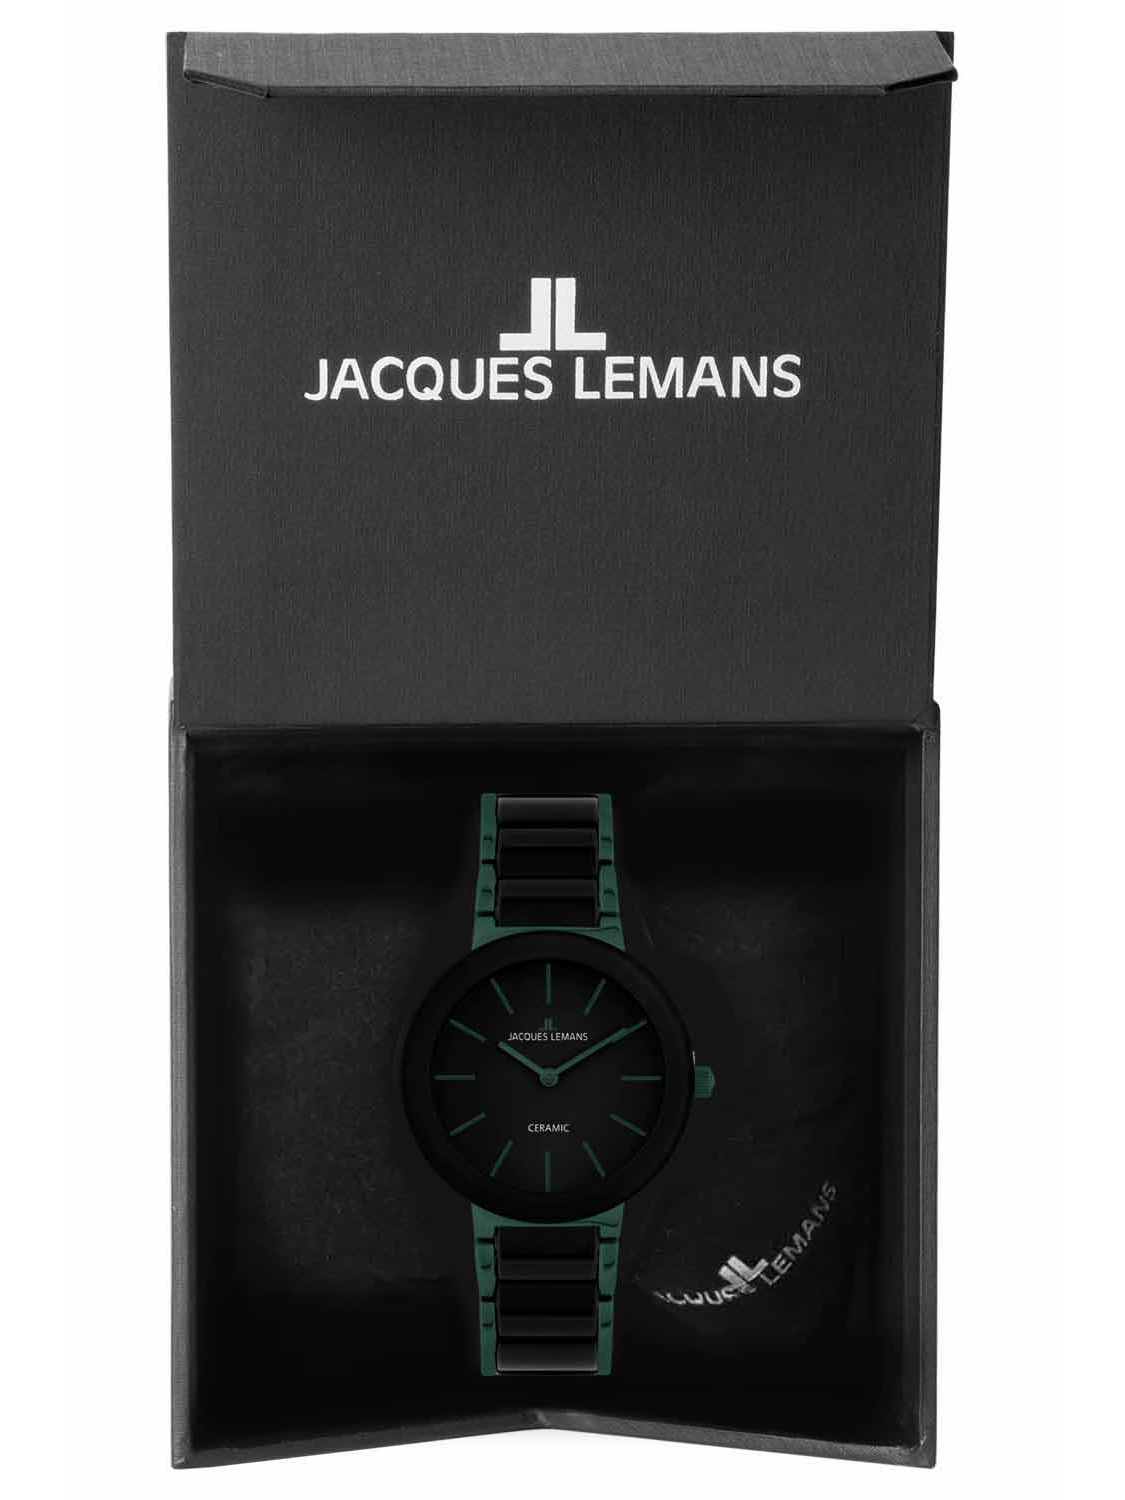 Monaco Armbanduhr Lemans Jacques uhrcenter Unisex • 42-8K Grün/Schwarz